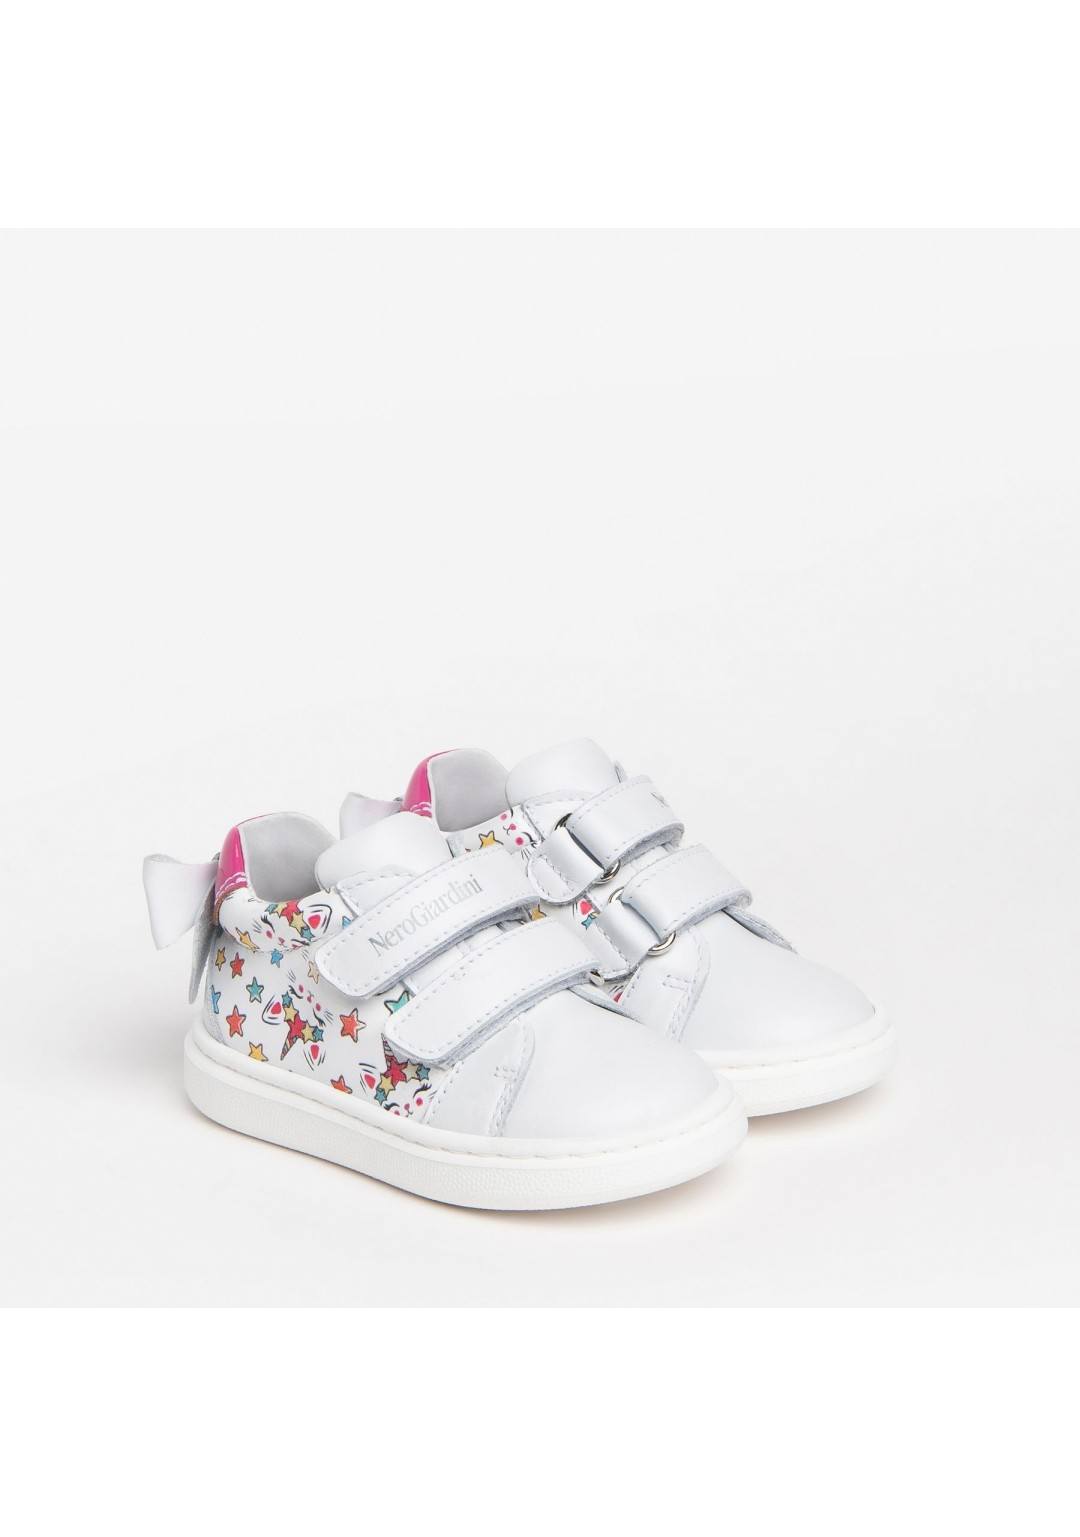 NEROGIARDINI - Sneakers Logata - Bambine e ragazze - 377 F